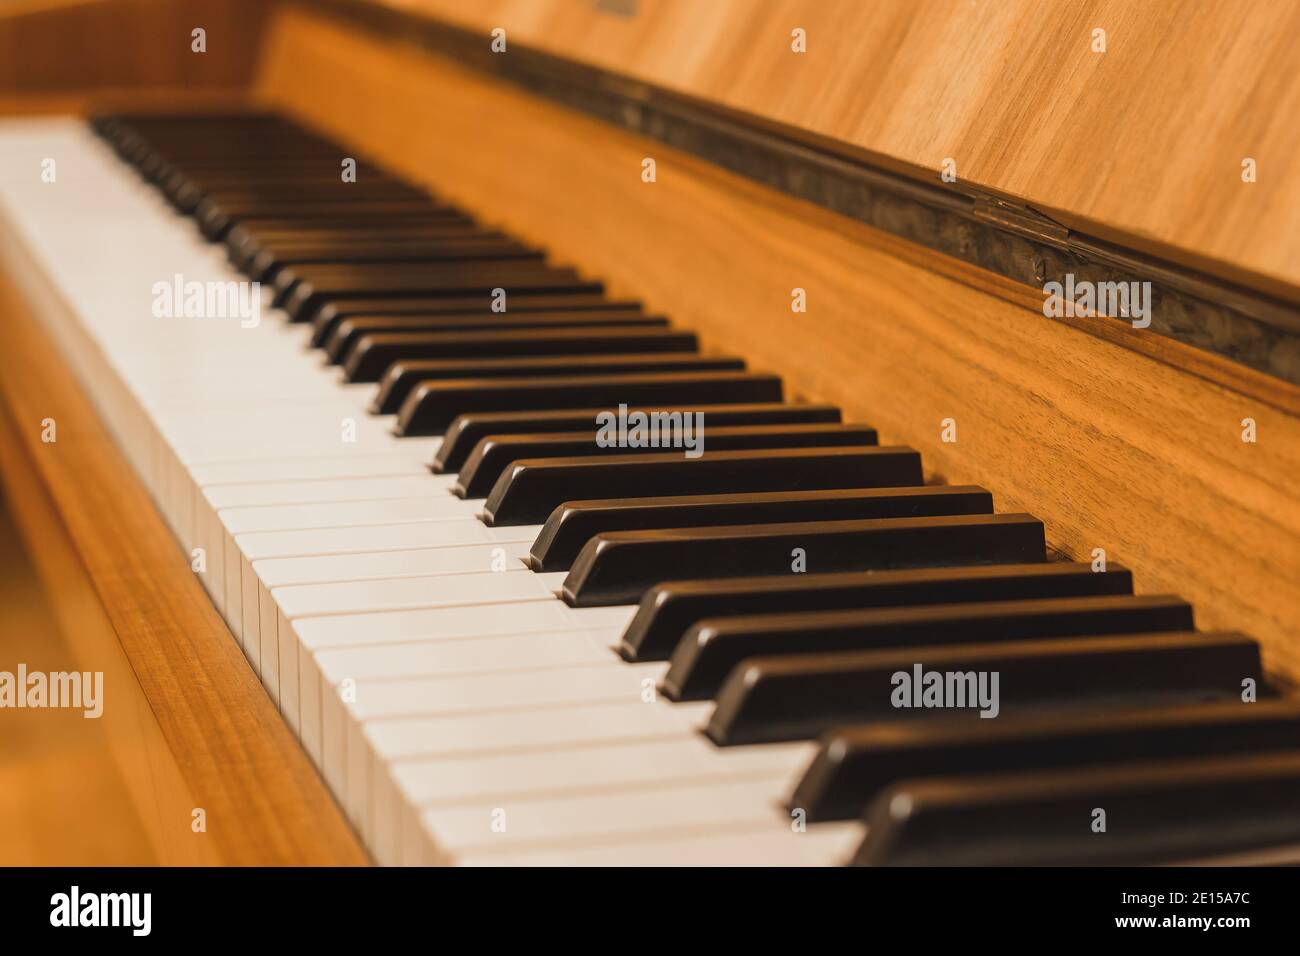 Klavier - Nahaufnahme des schwarz-weißen Klaviers Tasten Stockfoto